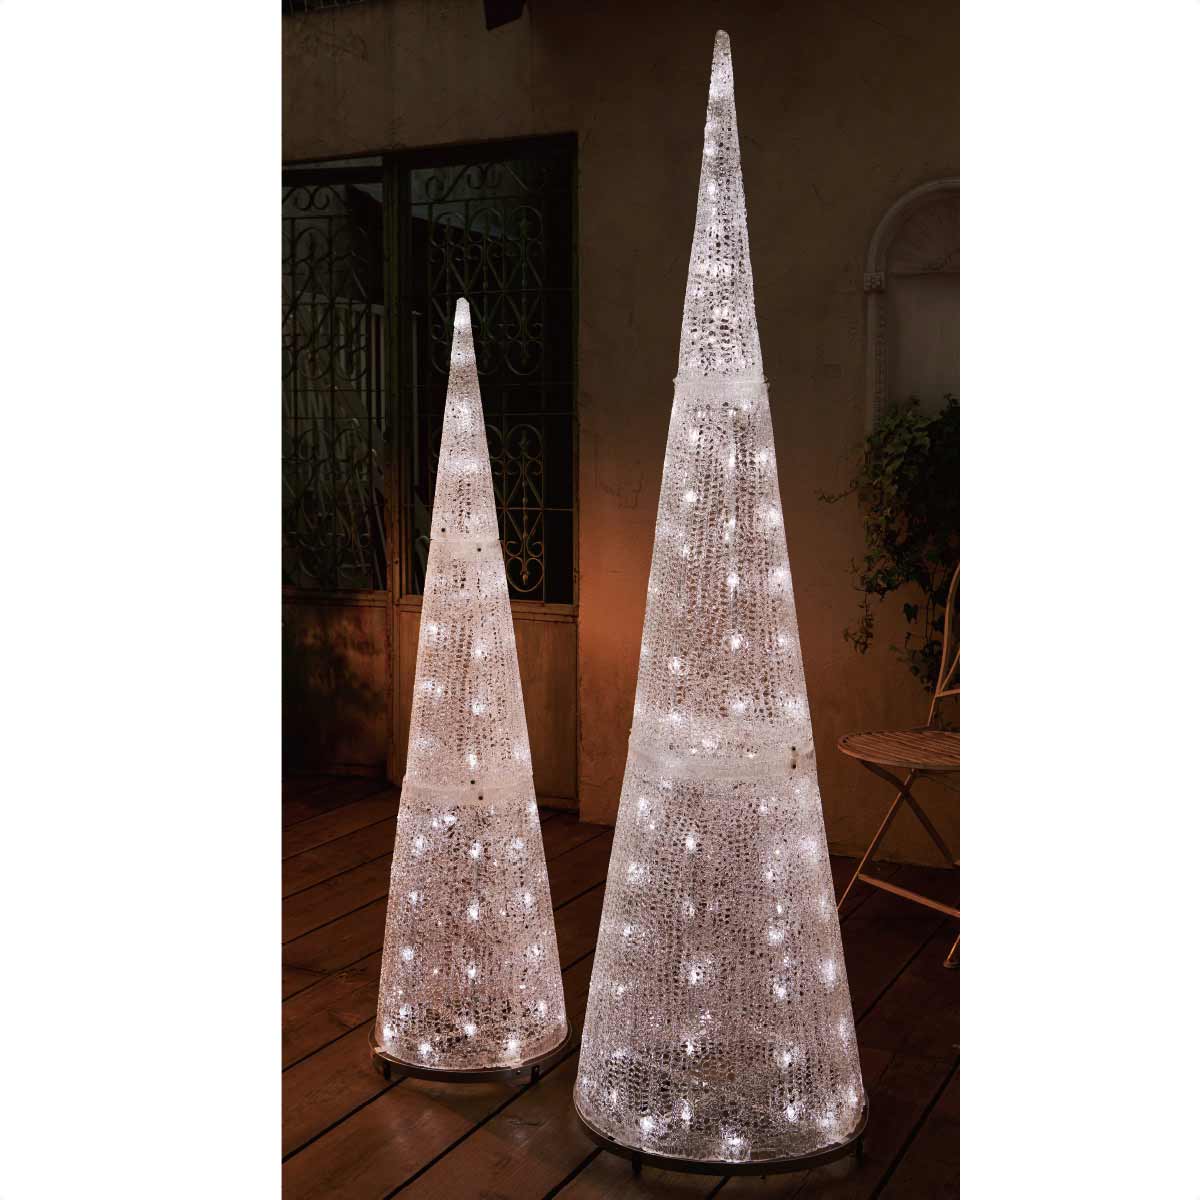 LEDブリリアントコーンツリー ホワイト クリスマスイルミネーション 屋外使用可 H140cm 【通販】ストア・エキスプレス